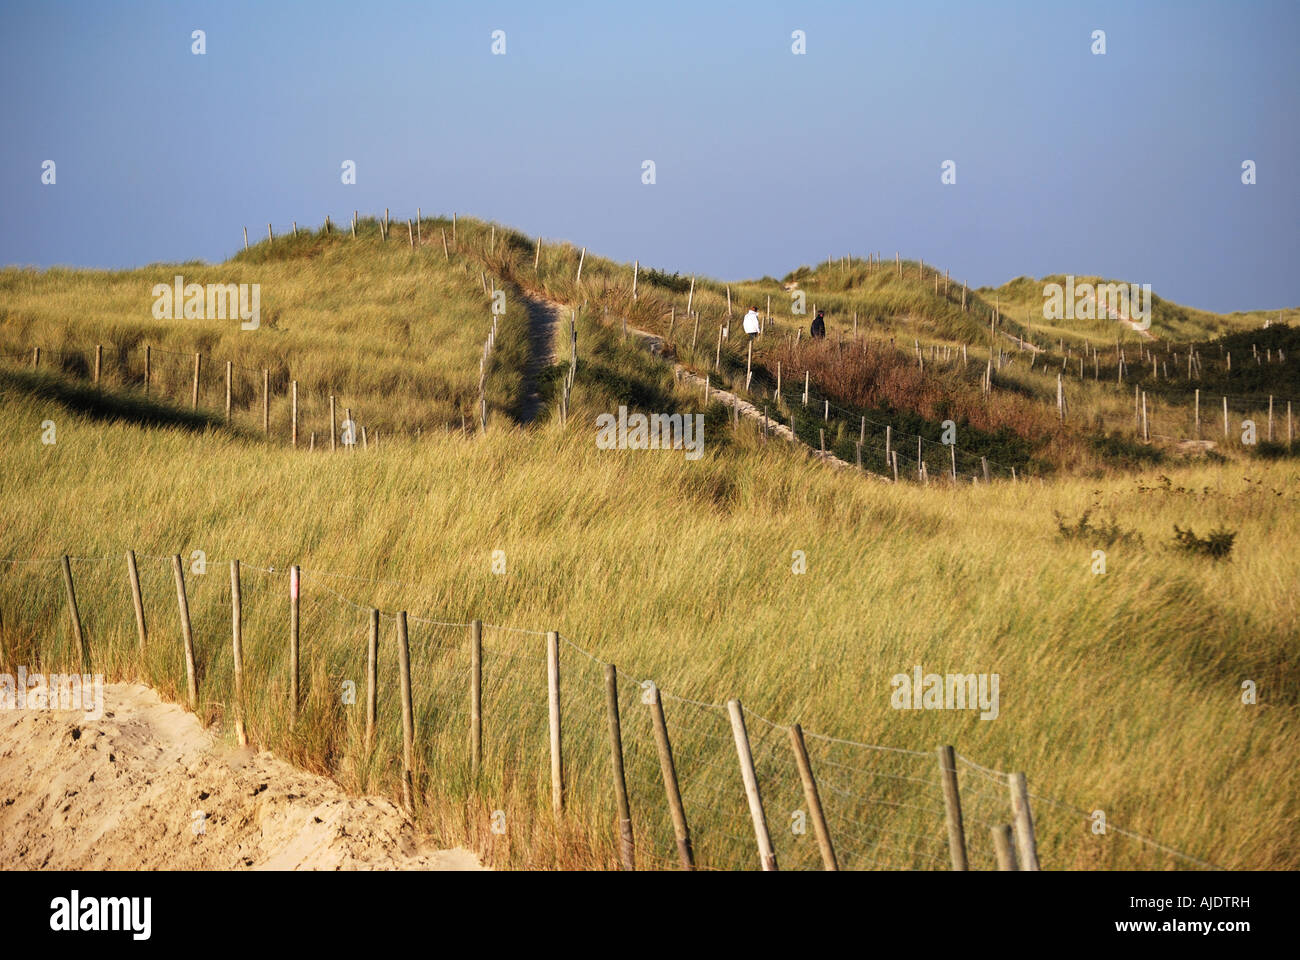 Conservation area of protected sand dunes, Le Touquet-Paris-Plage (Le Touquet), Pas de Calais, Nord-Pas-de-Calais, France Stock Photo